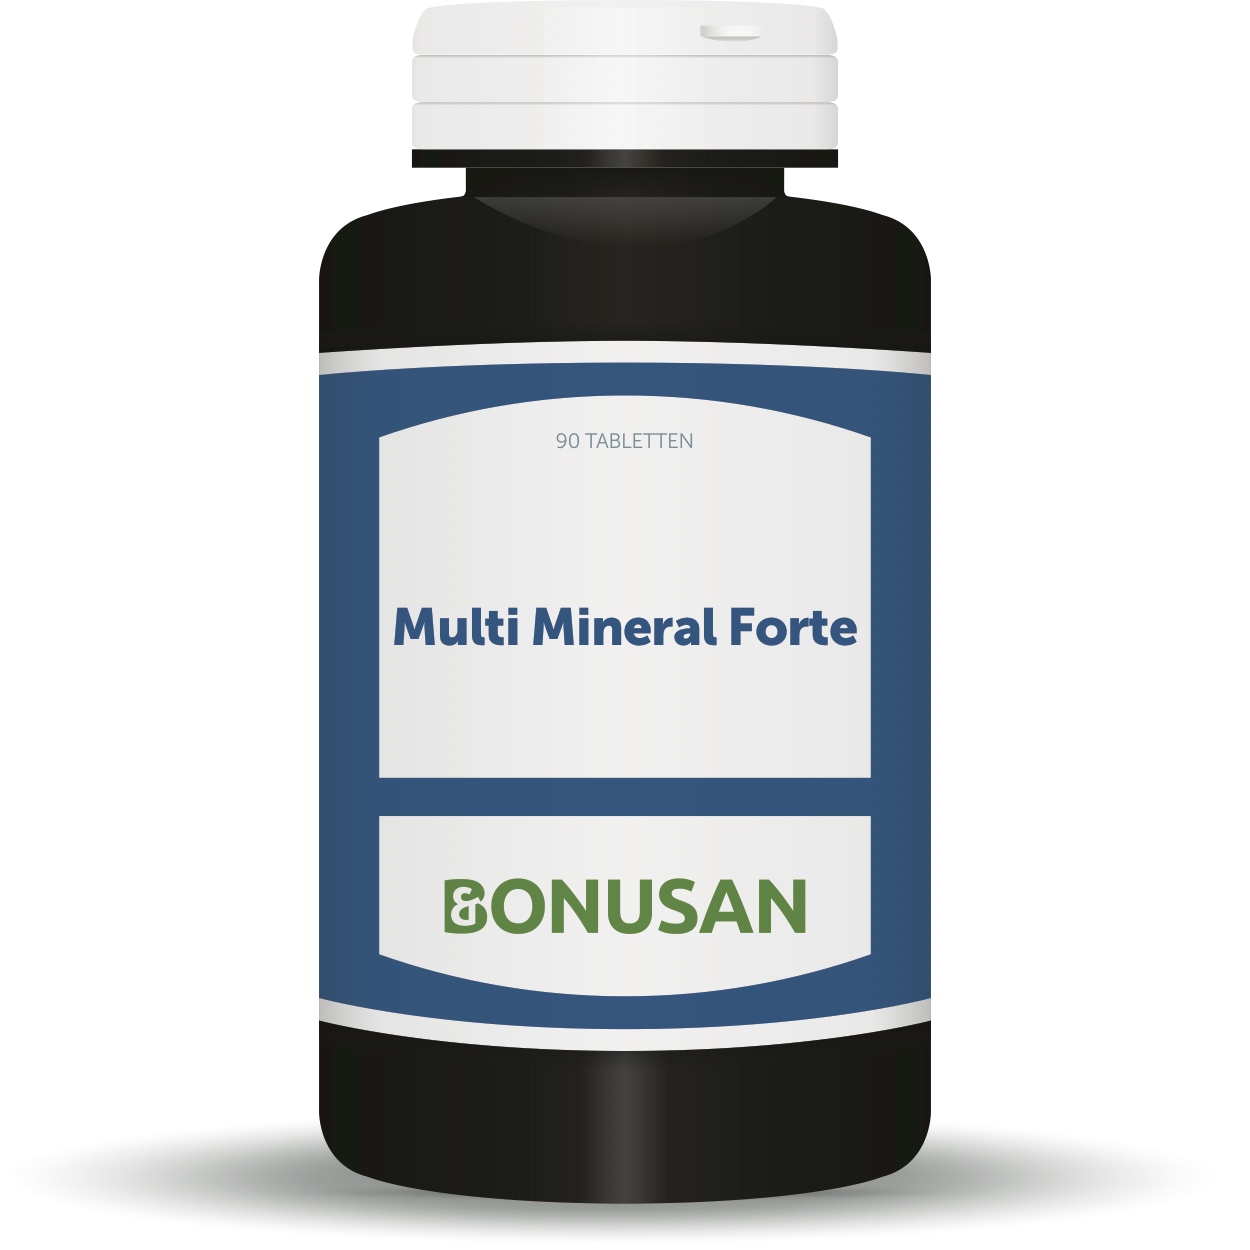 Multi Mineral Forte